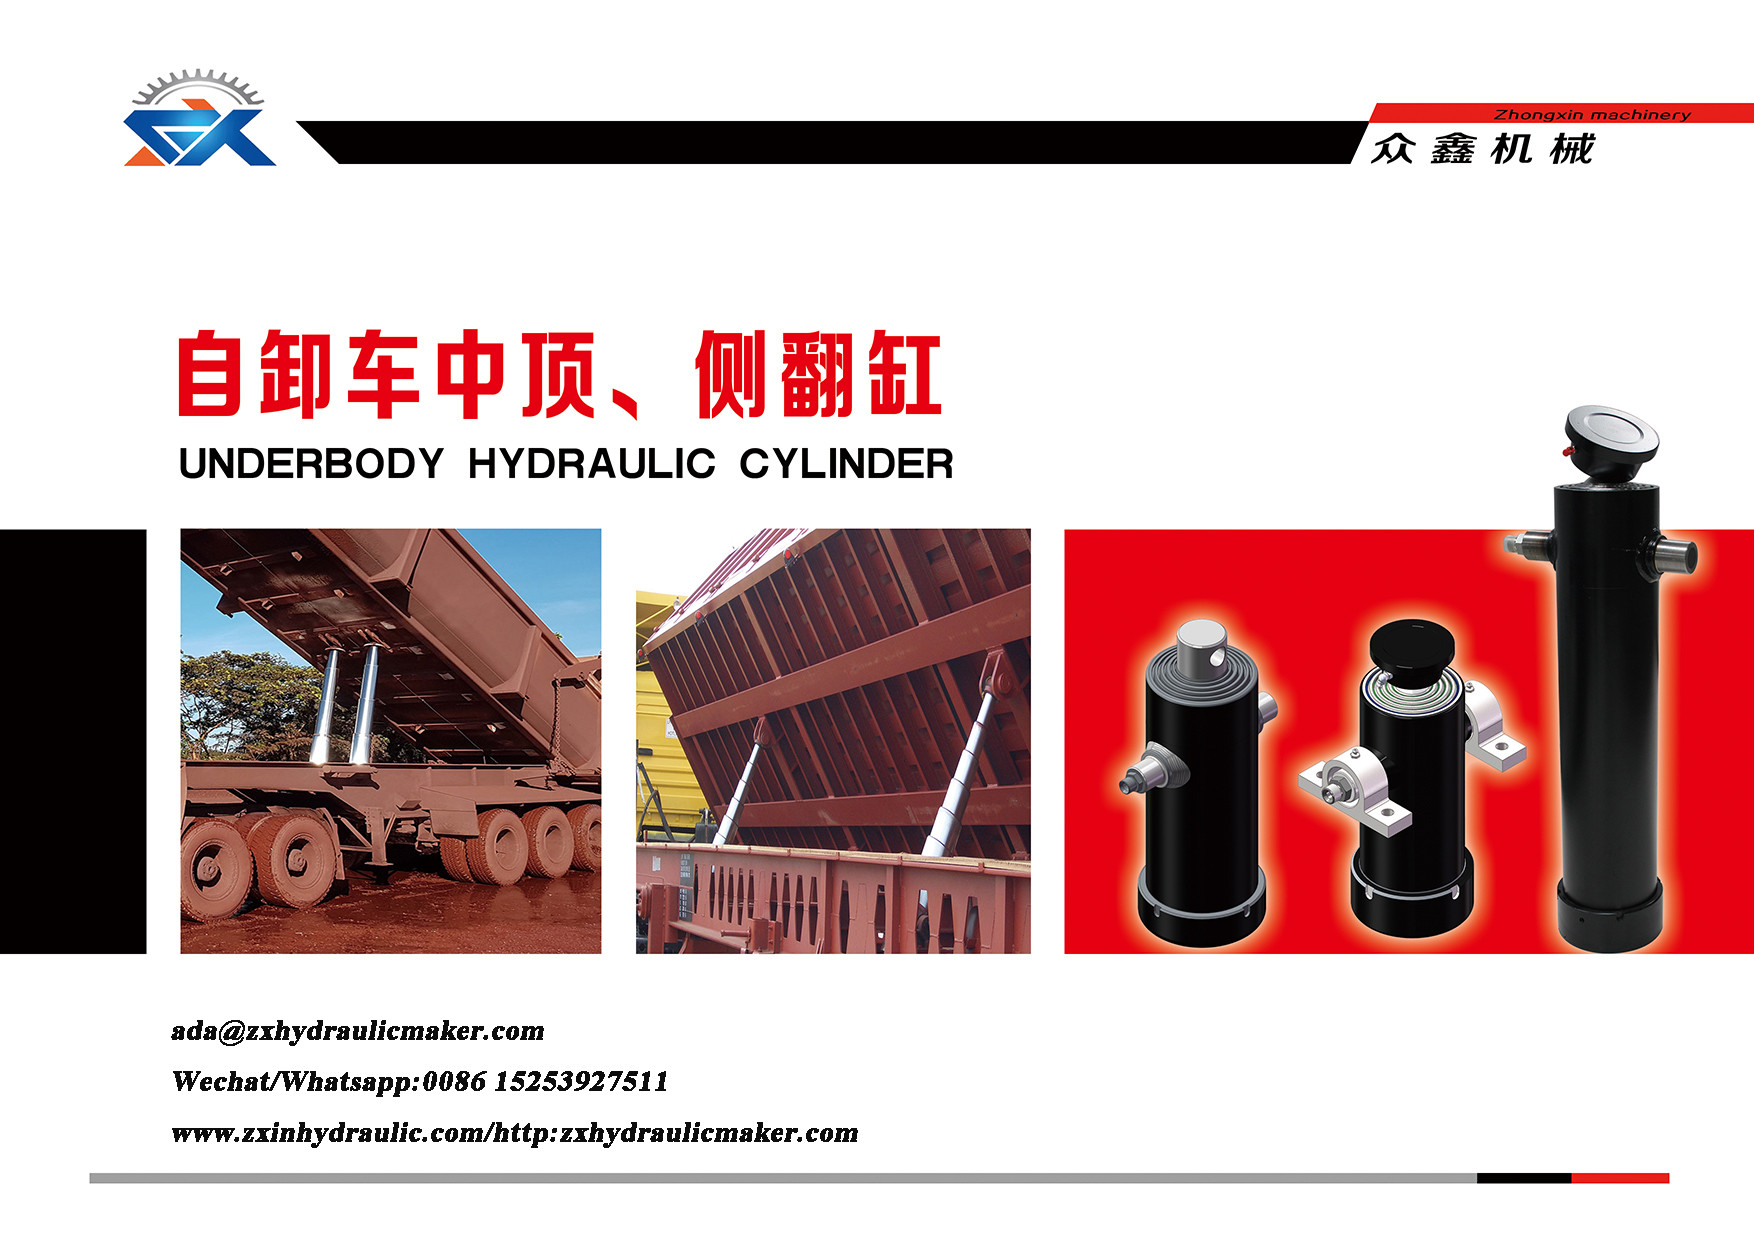 Underbody Hydraulic Cylinder